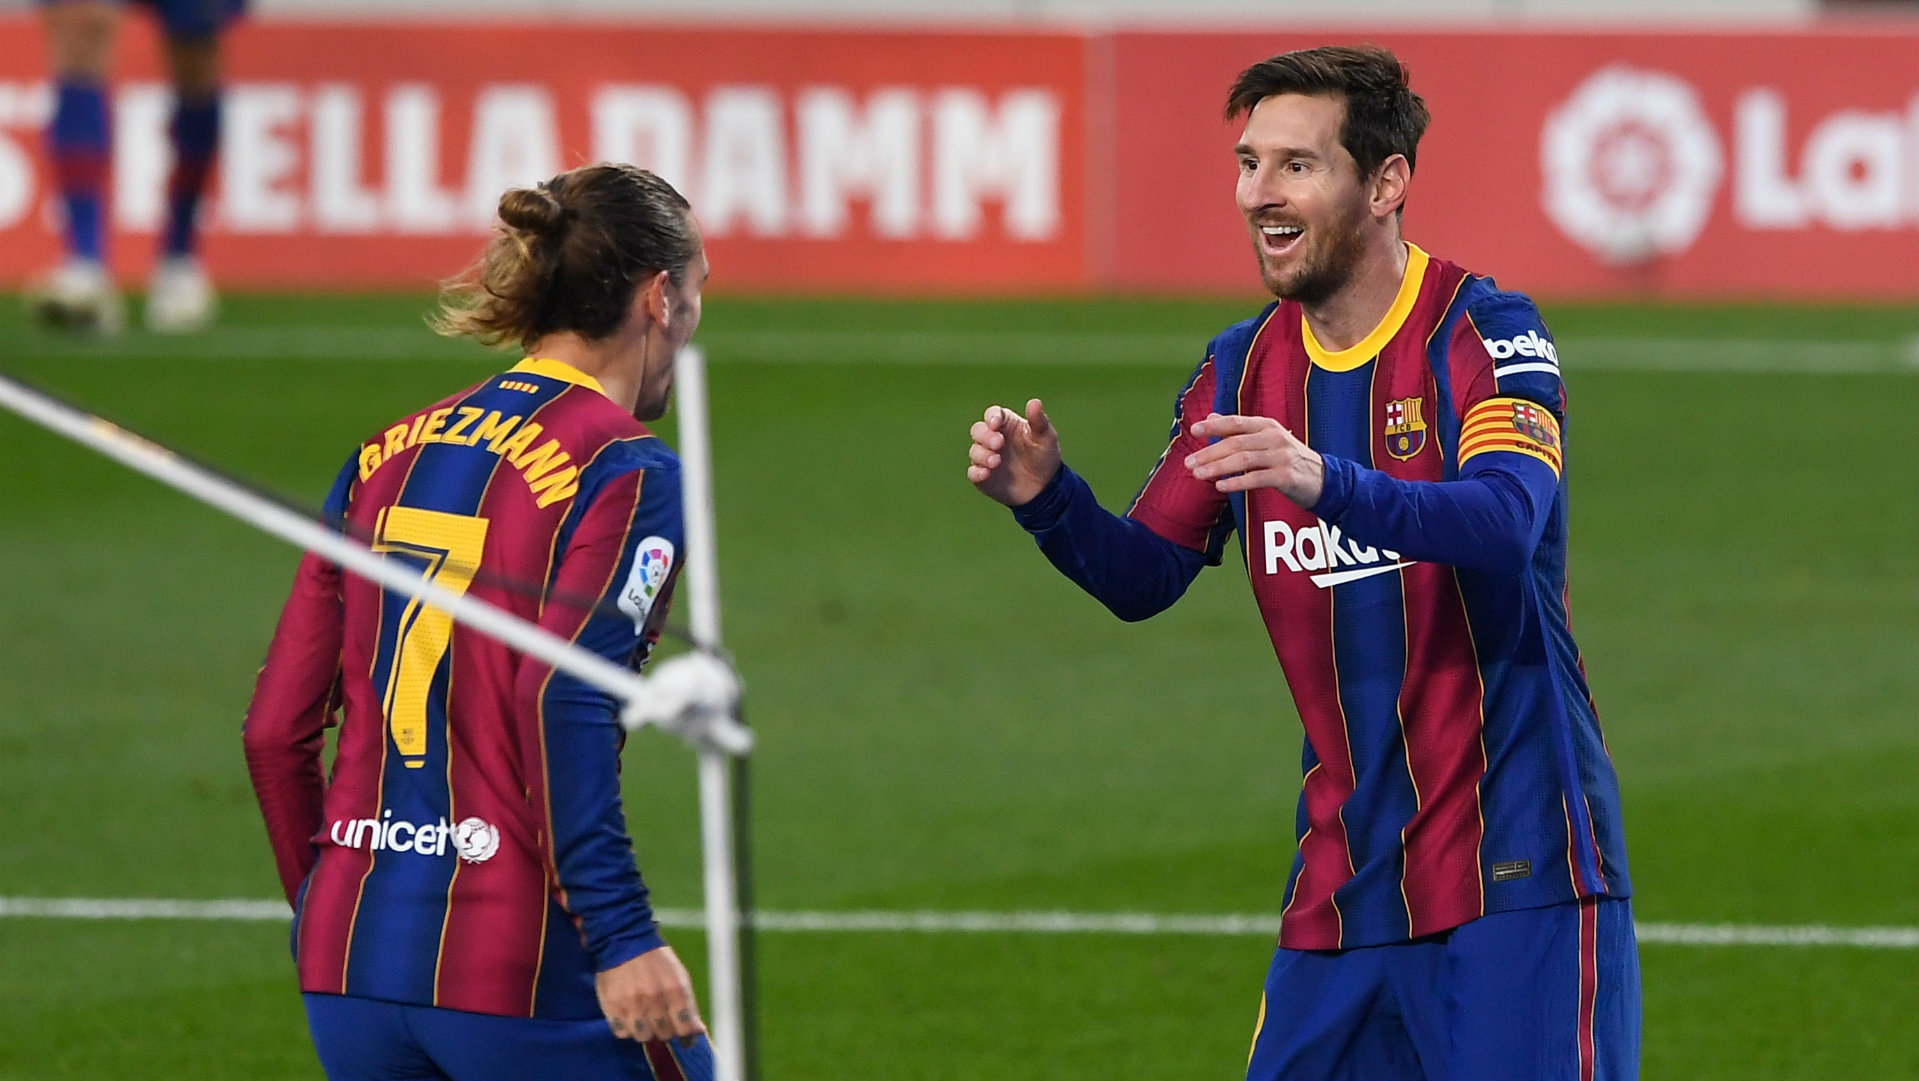 Barça - Bétis (5-2), Messi inspire le Barça après son entrée en jeu